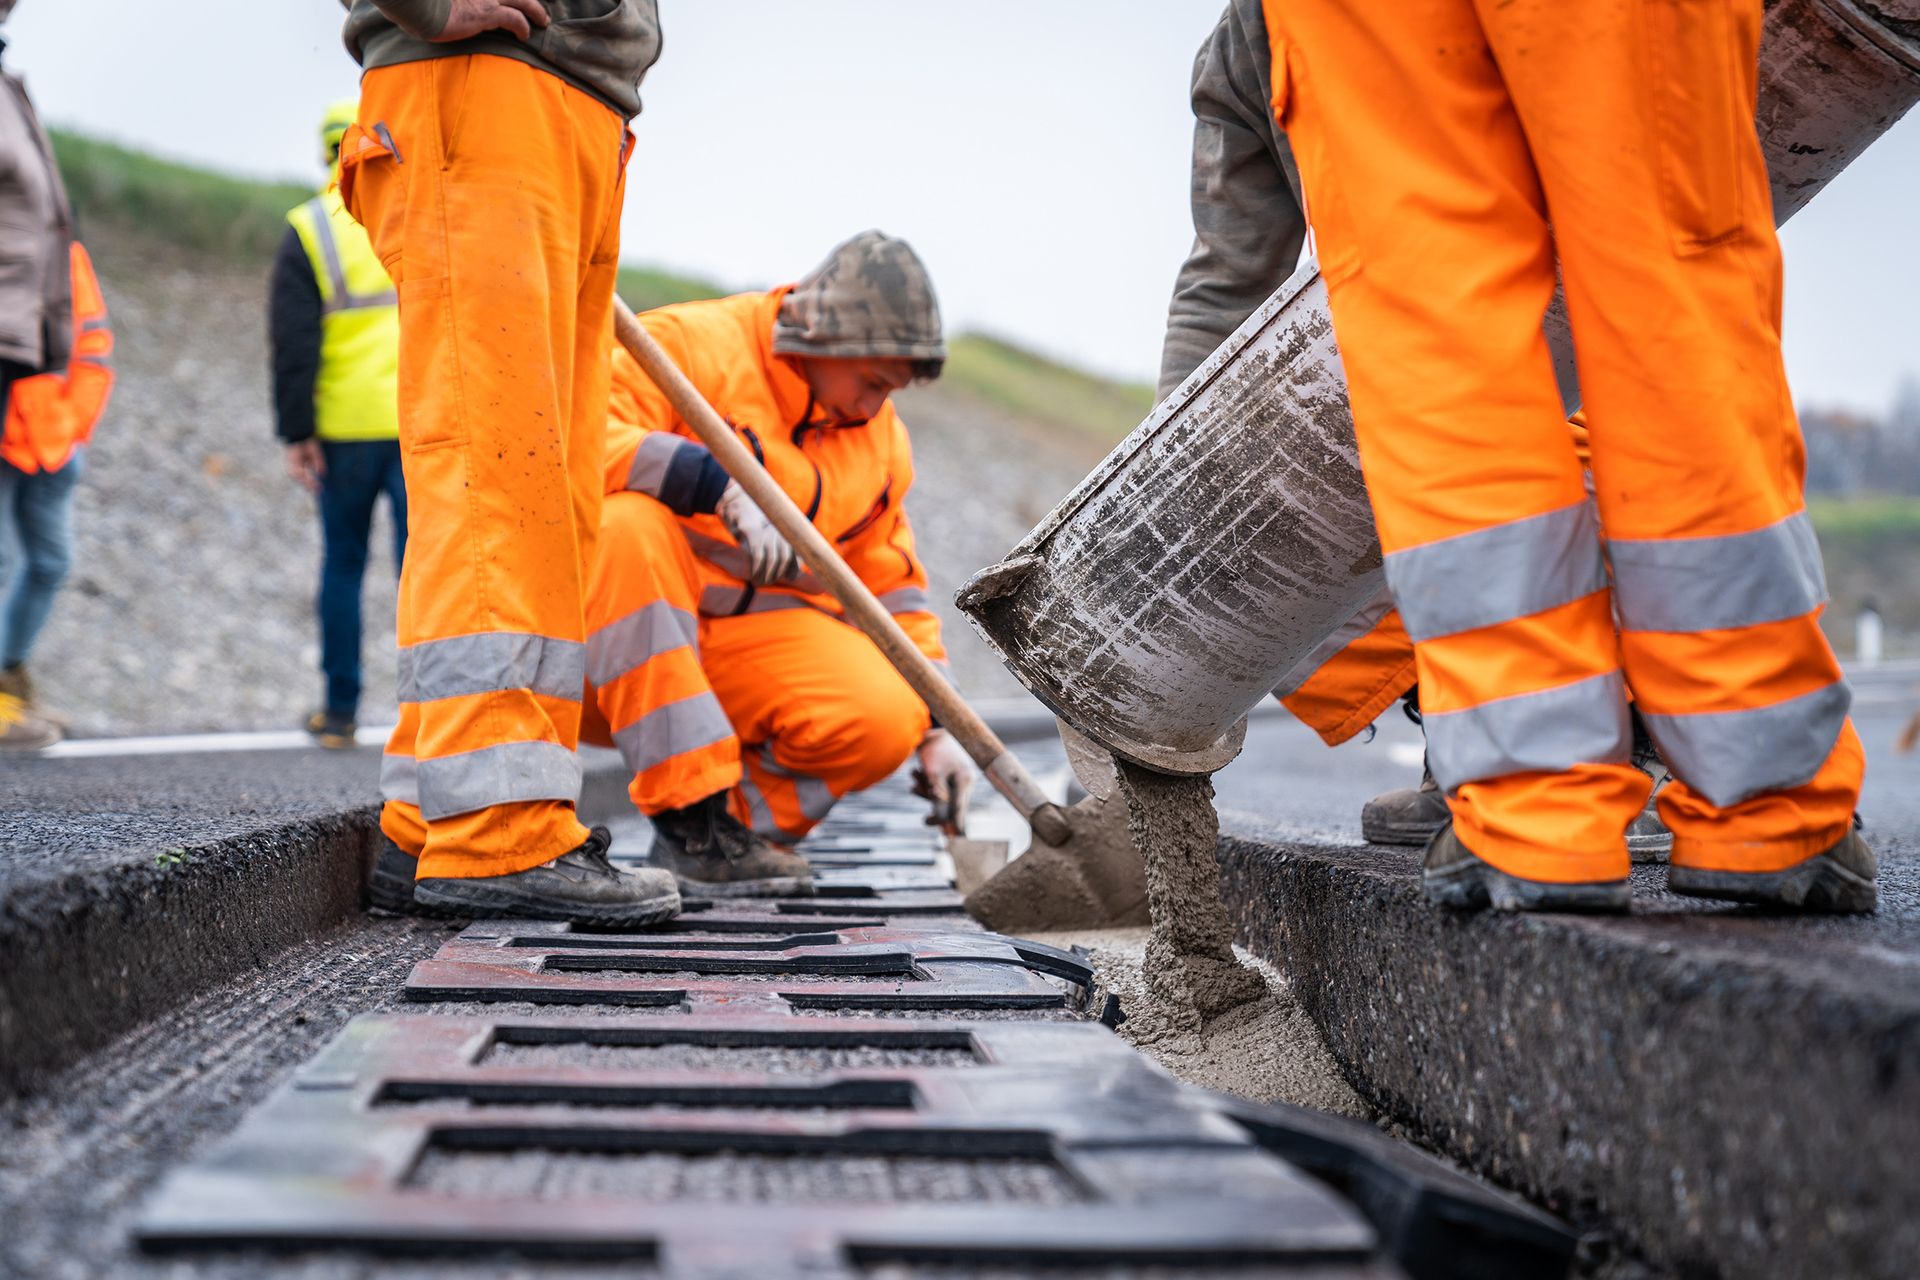 "Nākotnes arēnas" betona ieklāšana Kjari pilsētā, Brešas Lombardas provincē: tā ir novatoriska apļa ķēde netālu no BREBEMI A35 automaģistrāles, uz kuras tiek pārbaudīta elektrisko transportlīdzekļu indukcijas uzlāde. pārvietoties pa tām paredzētajām joslām, zem kurām novietotas asfalta spoles